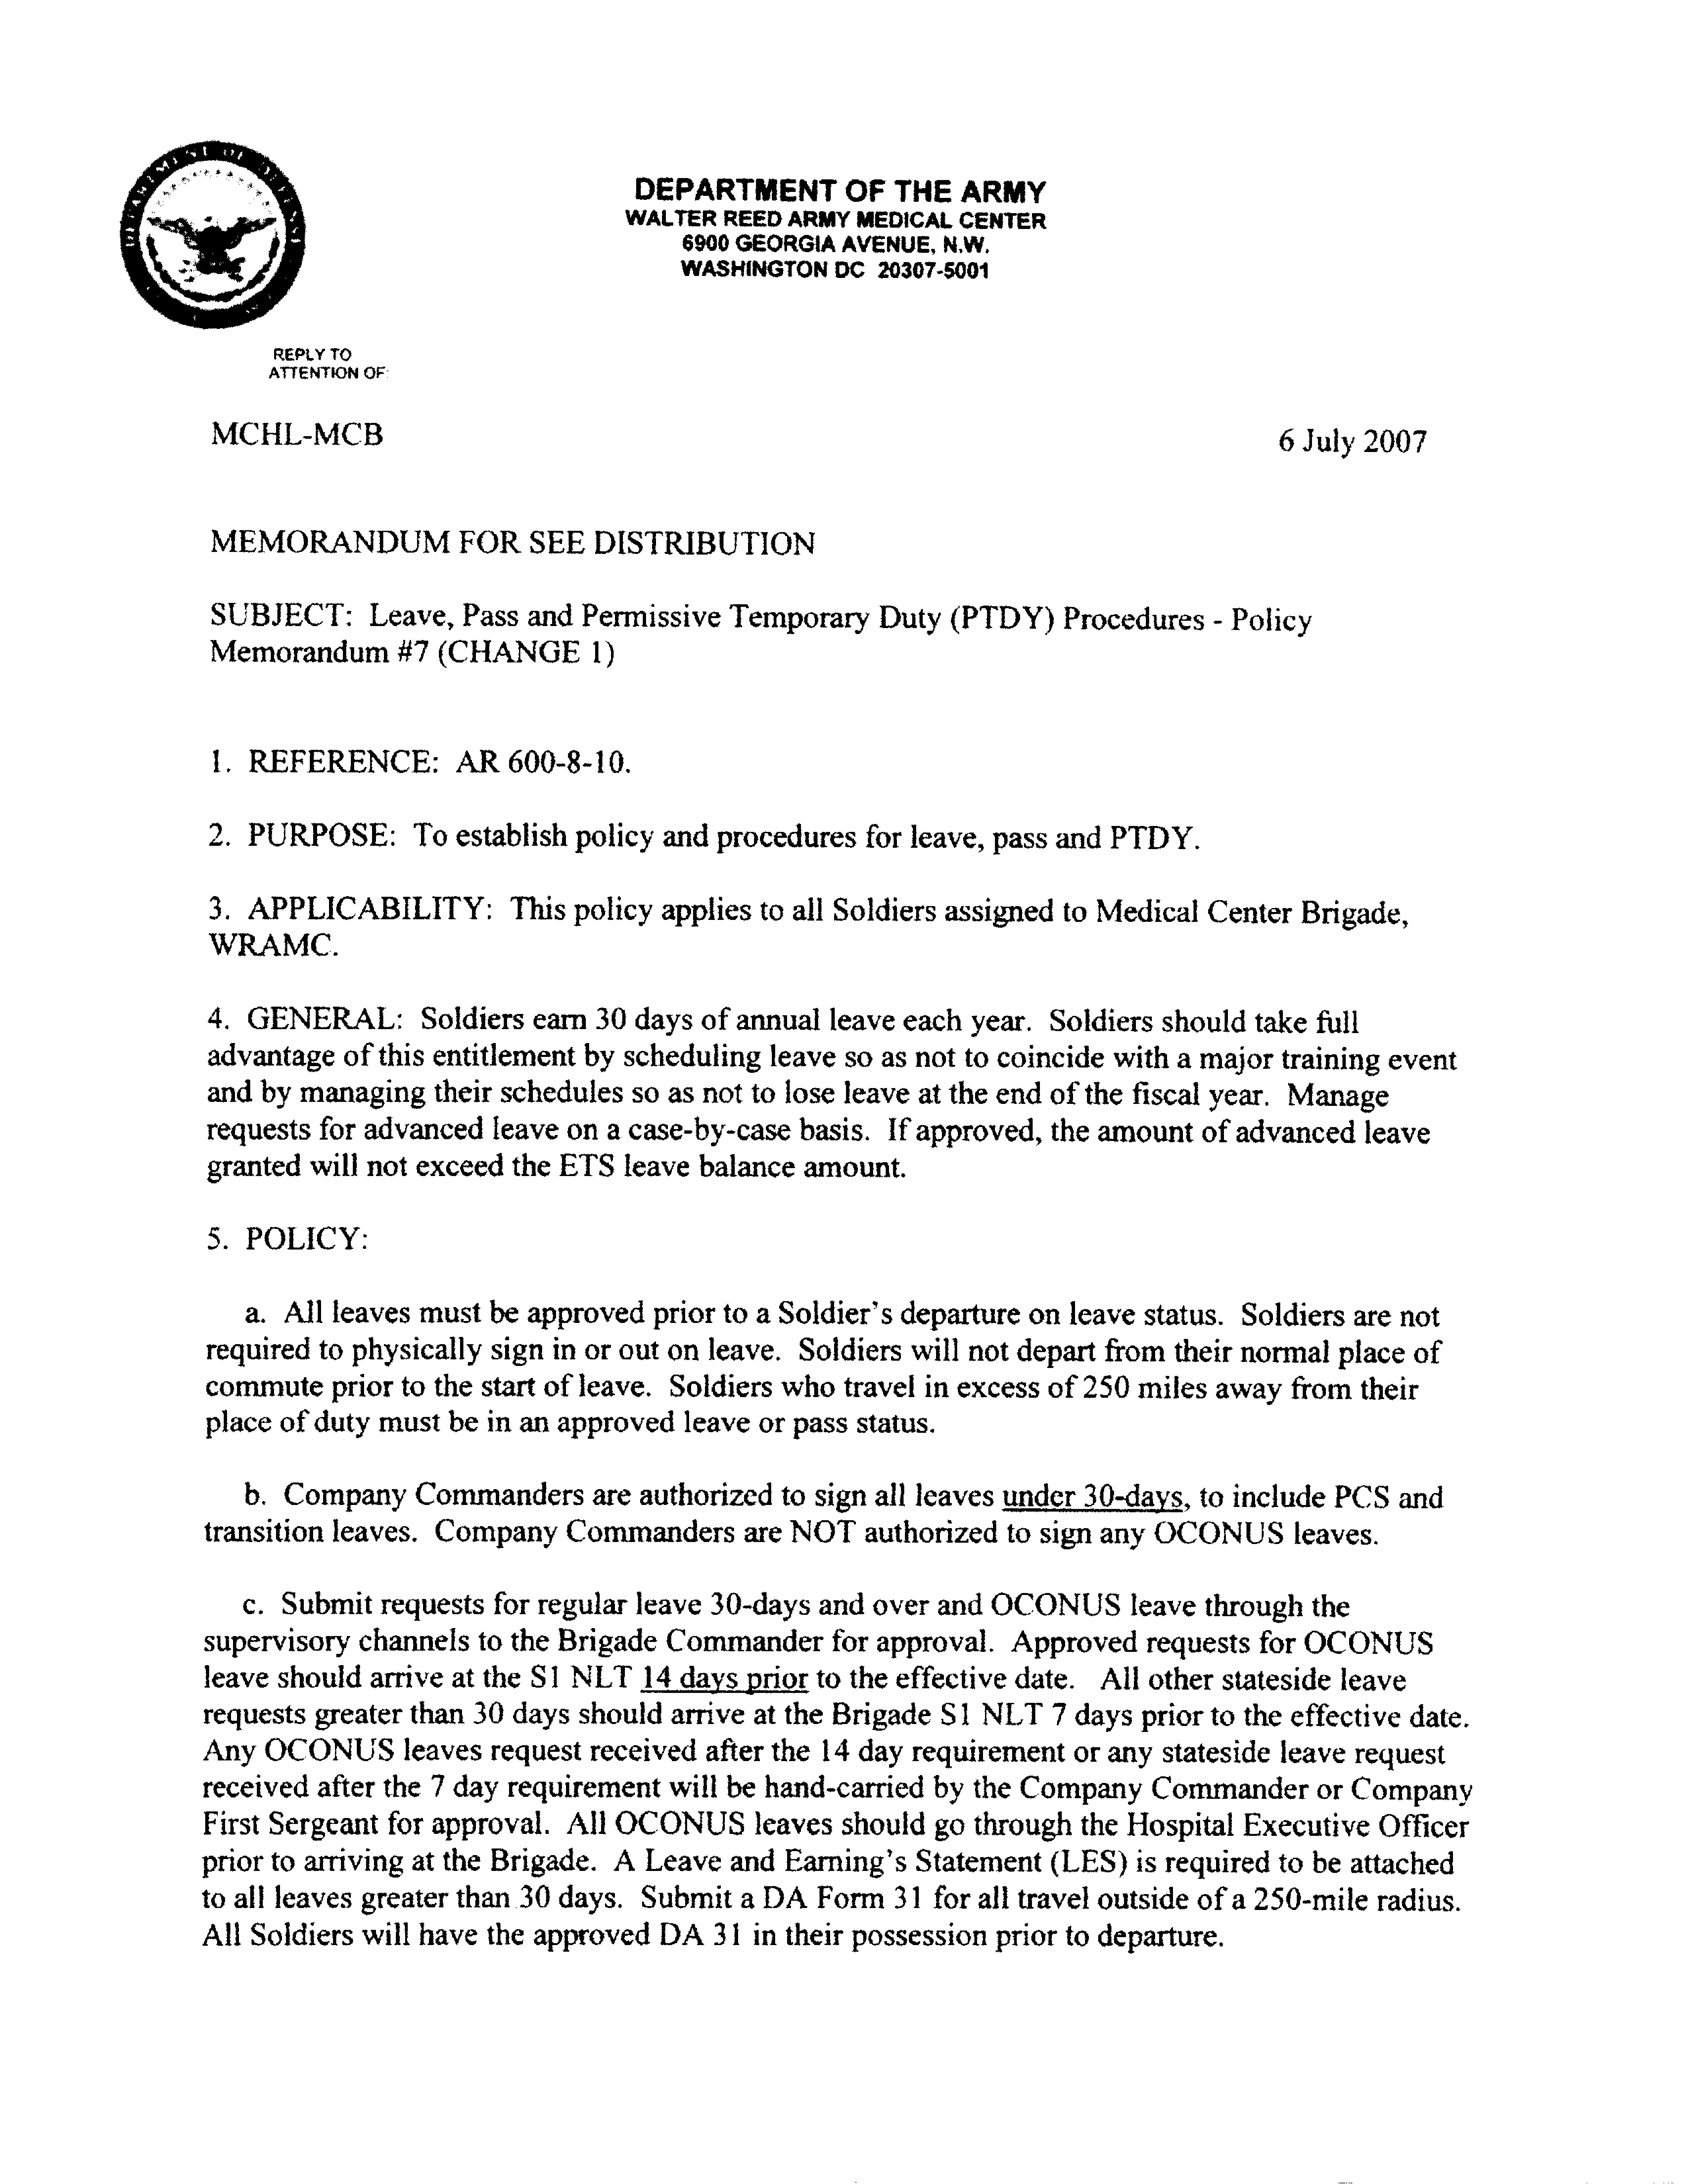 Army Memorandum For Leave main image